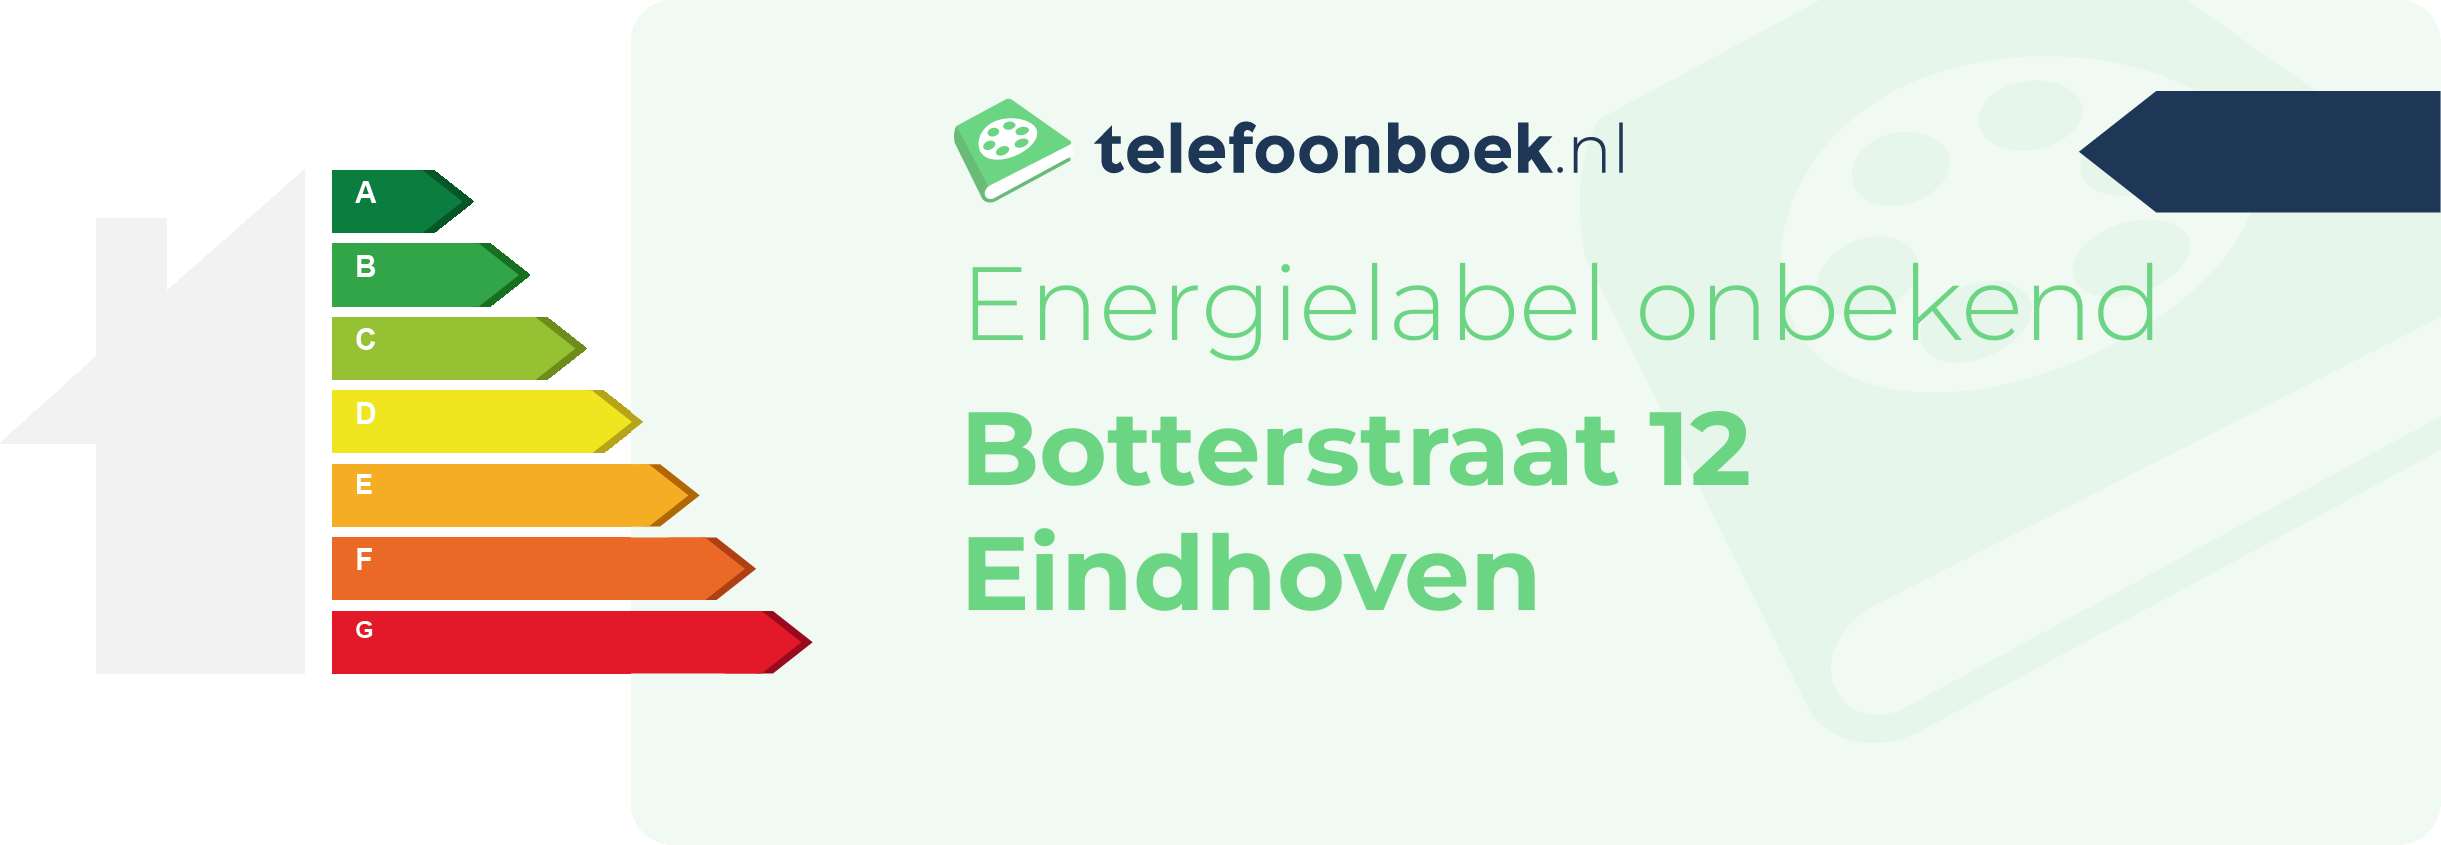 Energielabel Botterstraat 12 Eindhoven